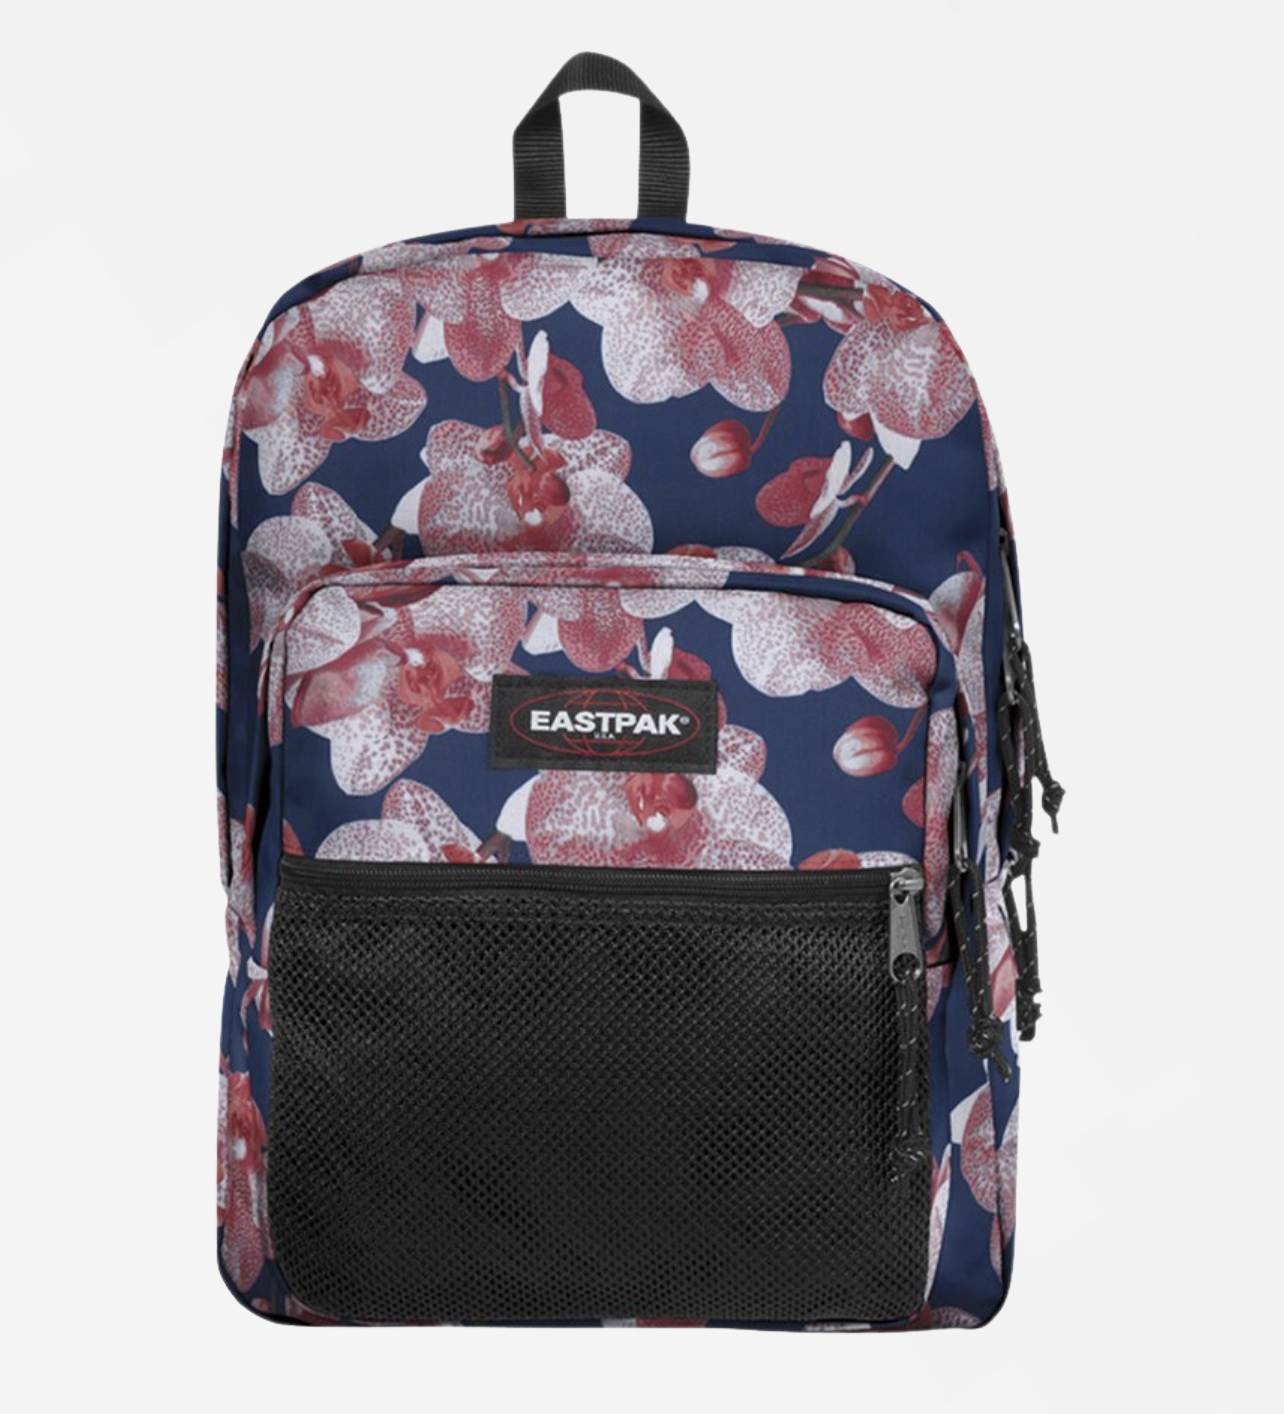 Eastpak Flowerd Backpack